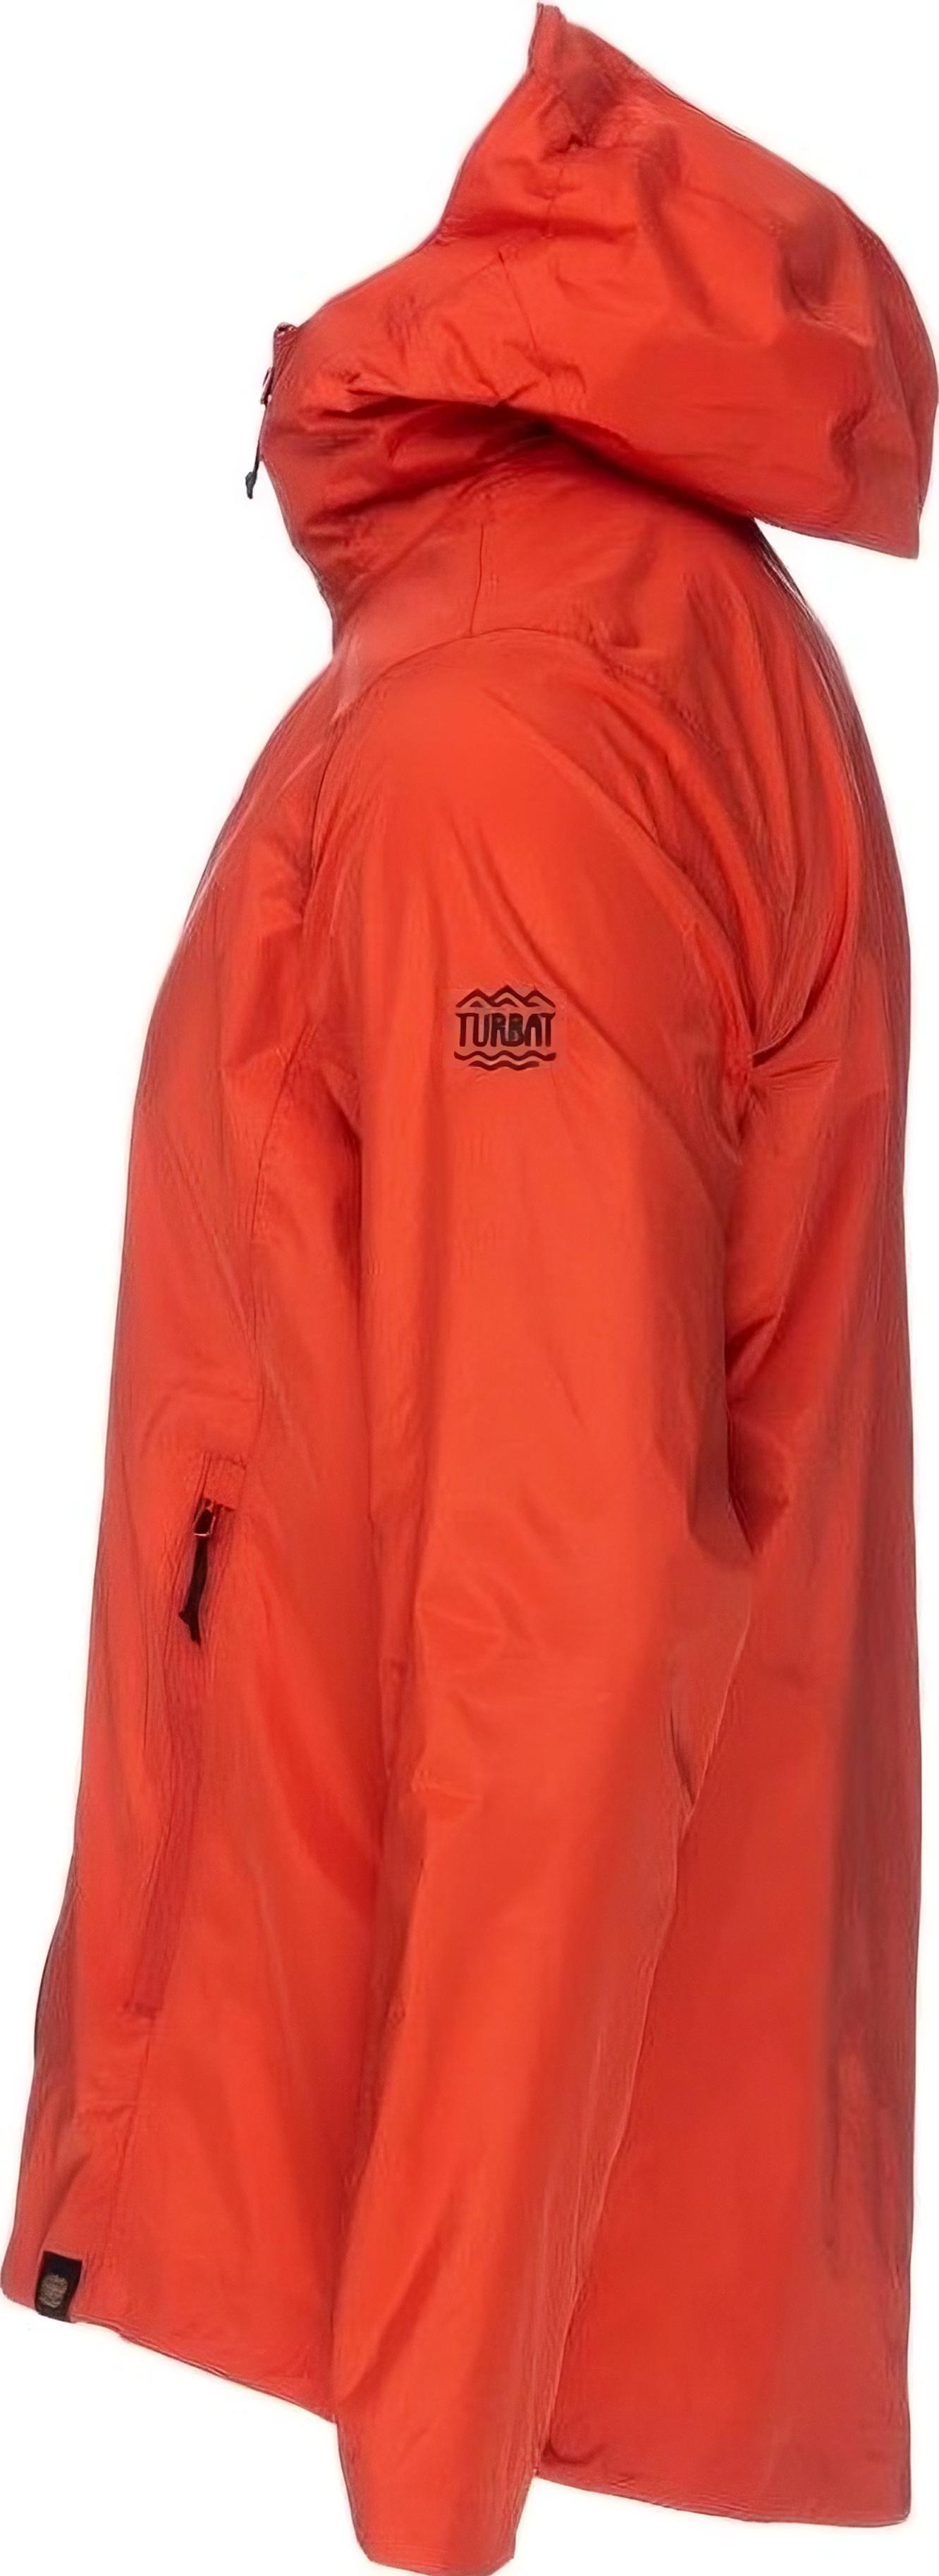 Куртка женская Turbat Isla Wmn orange red M красный фото 2